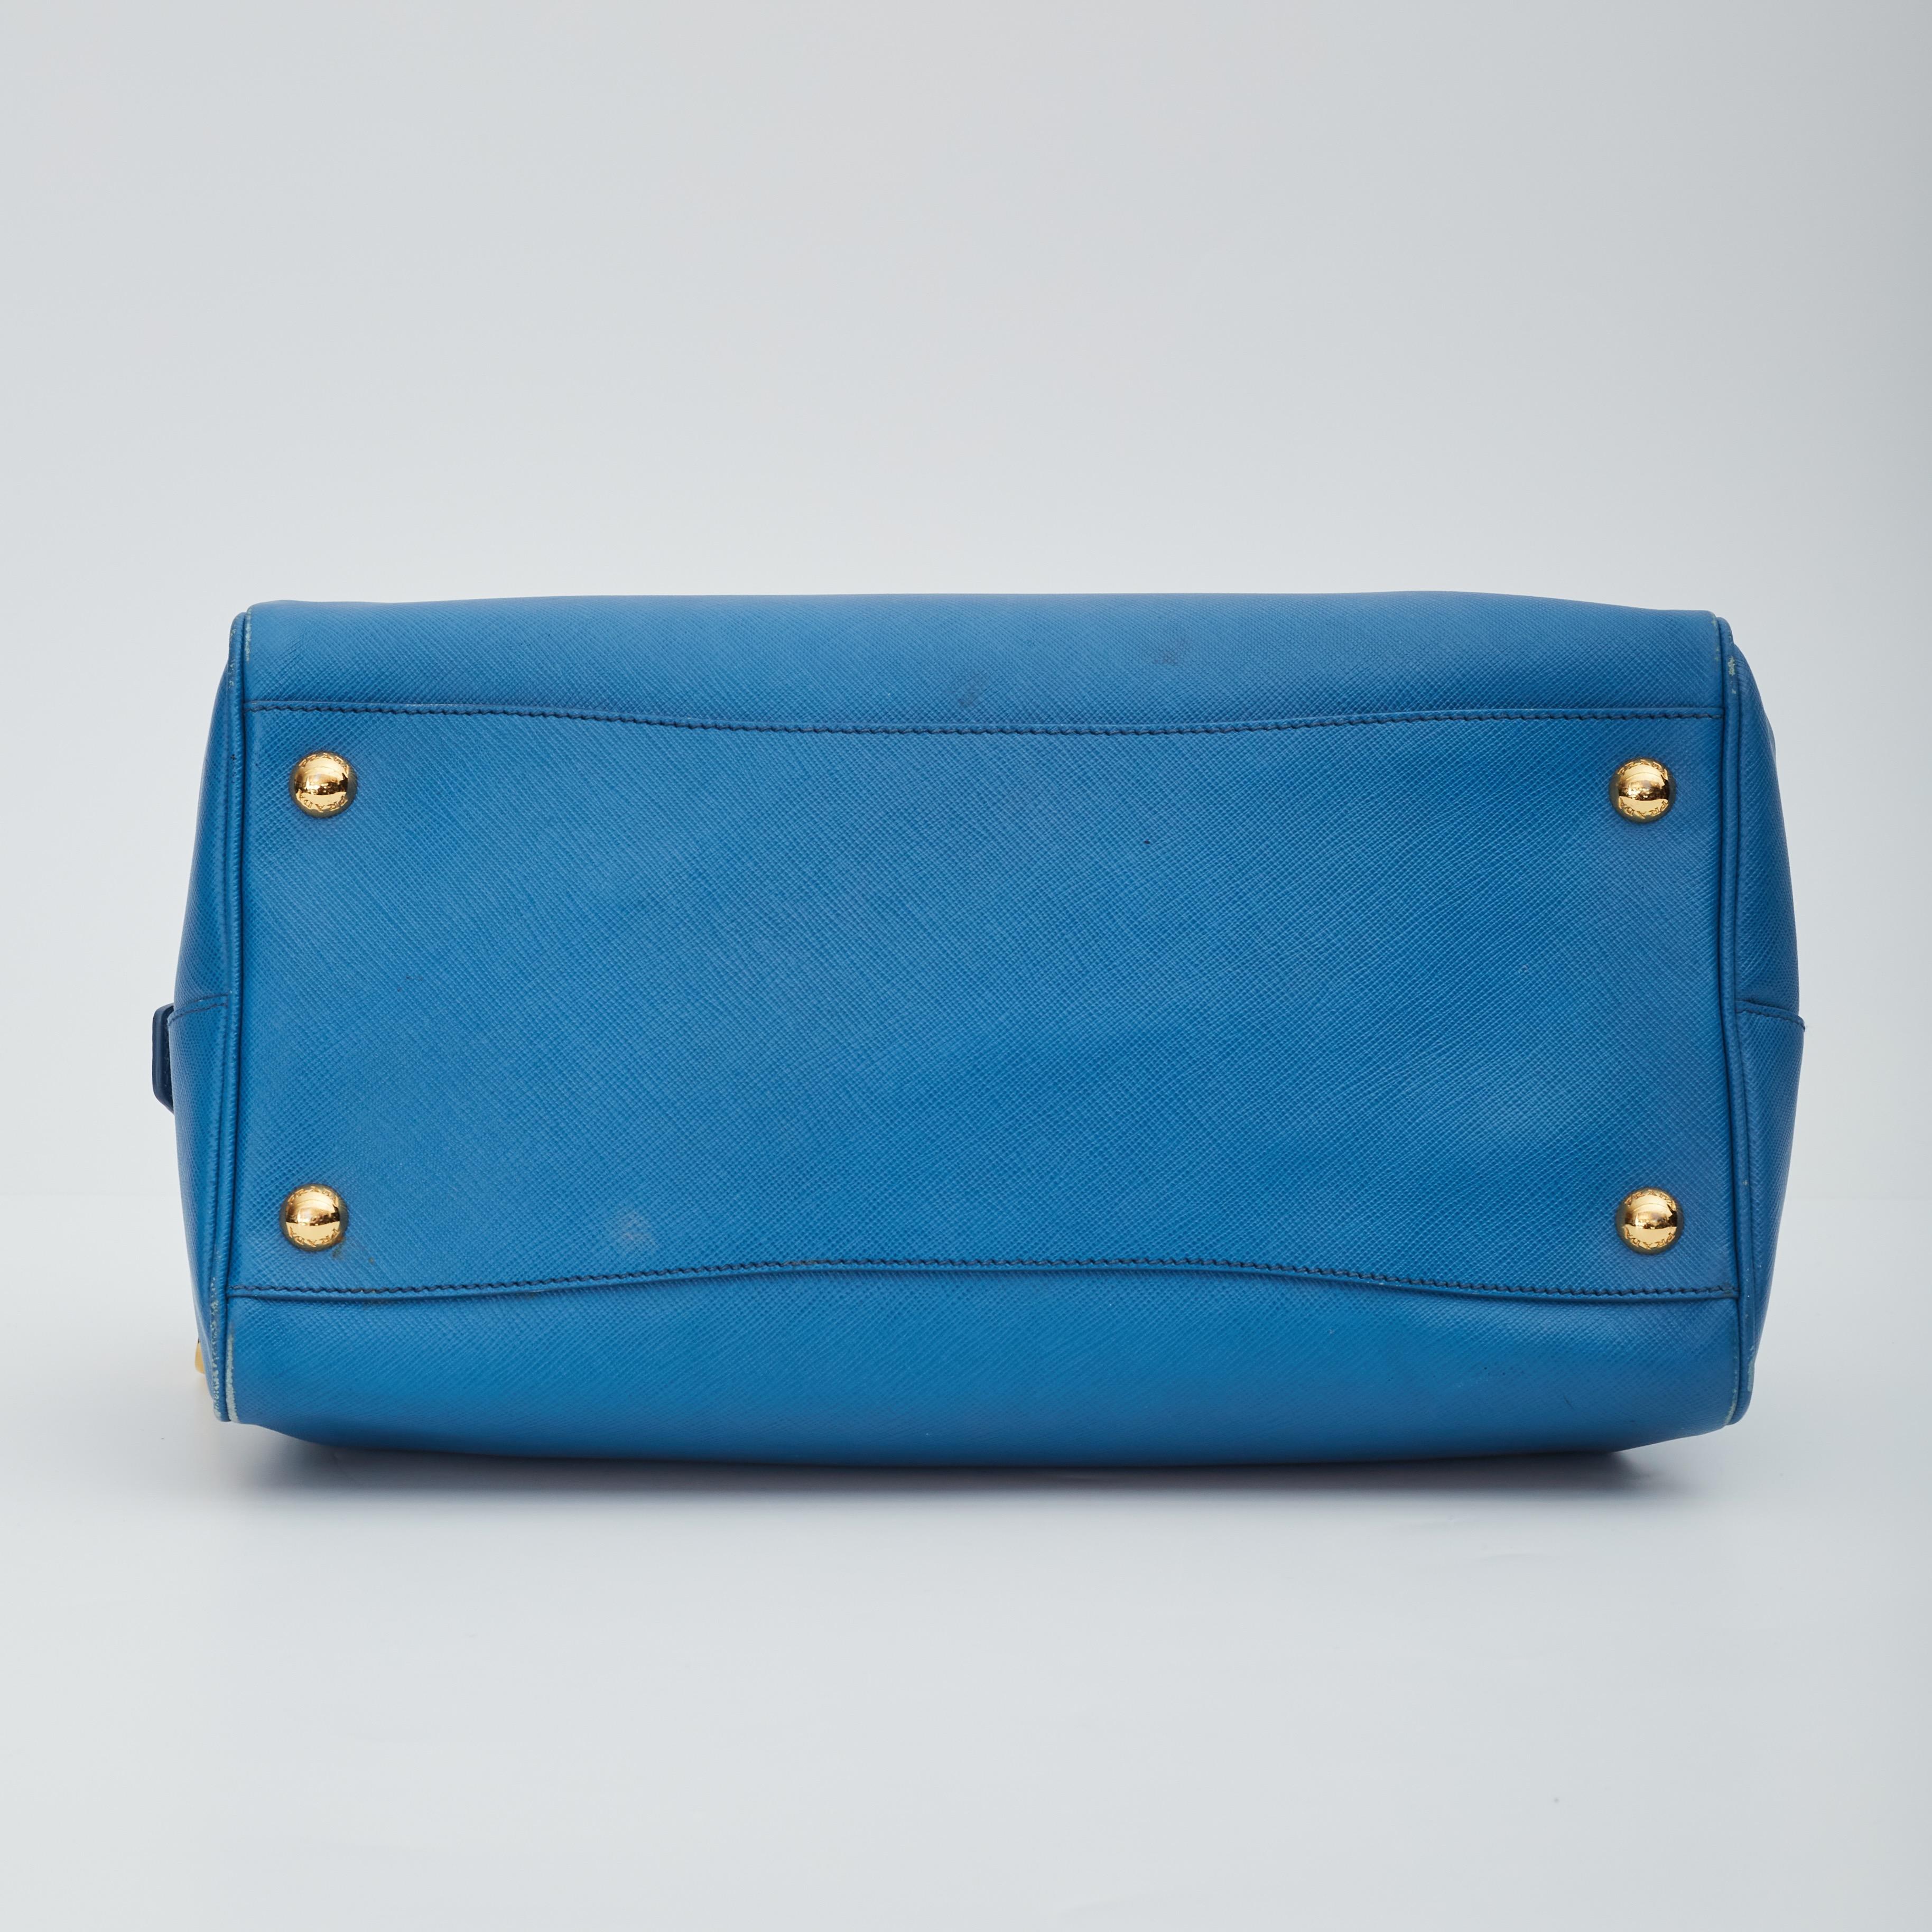 Prada Saffiano Leather Blue Bauletto Boston Bag Round For Sale 1